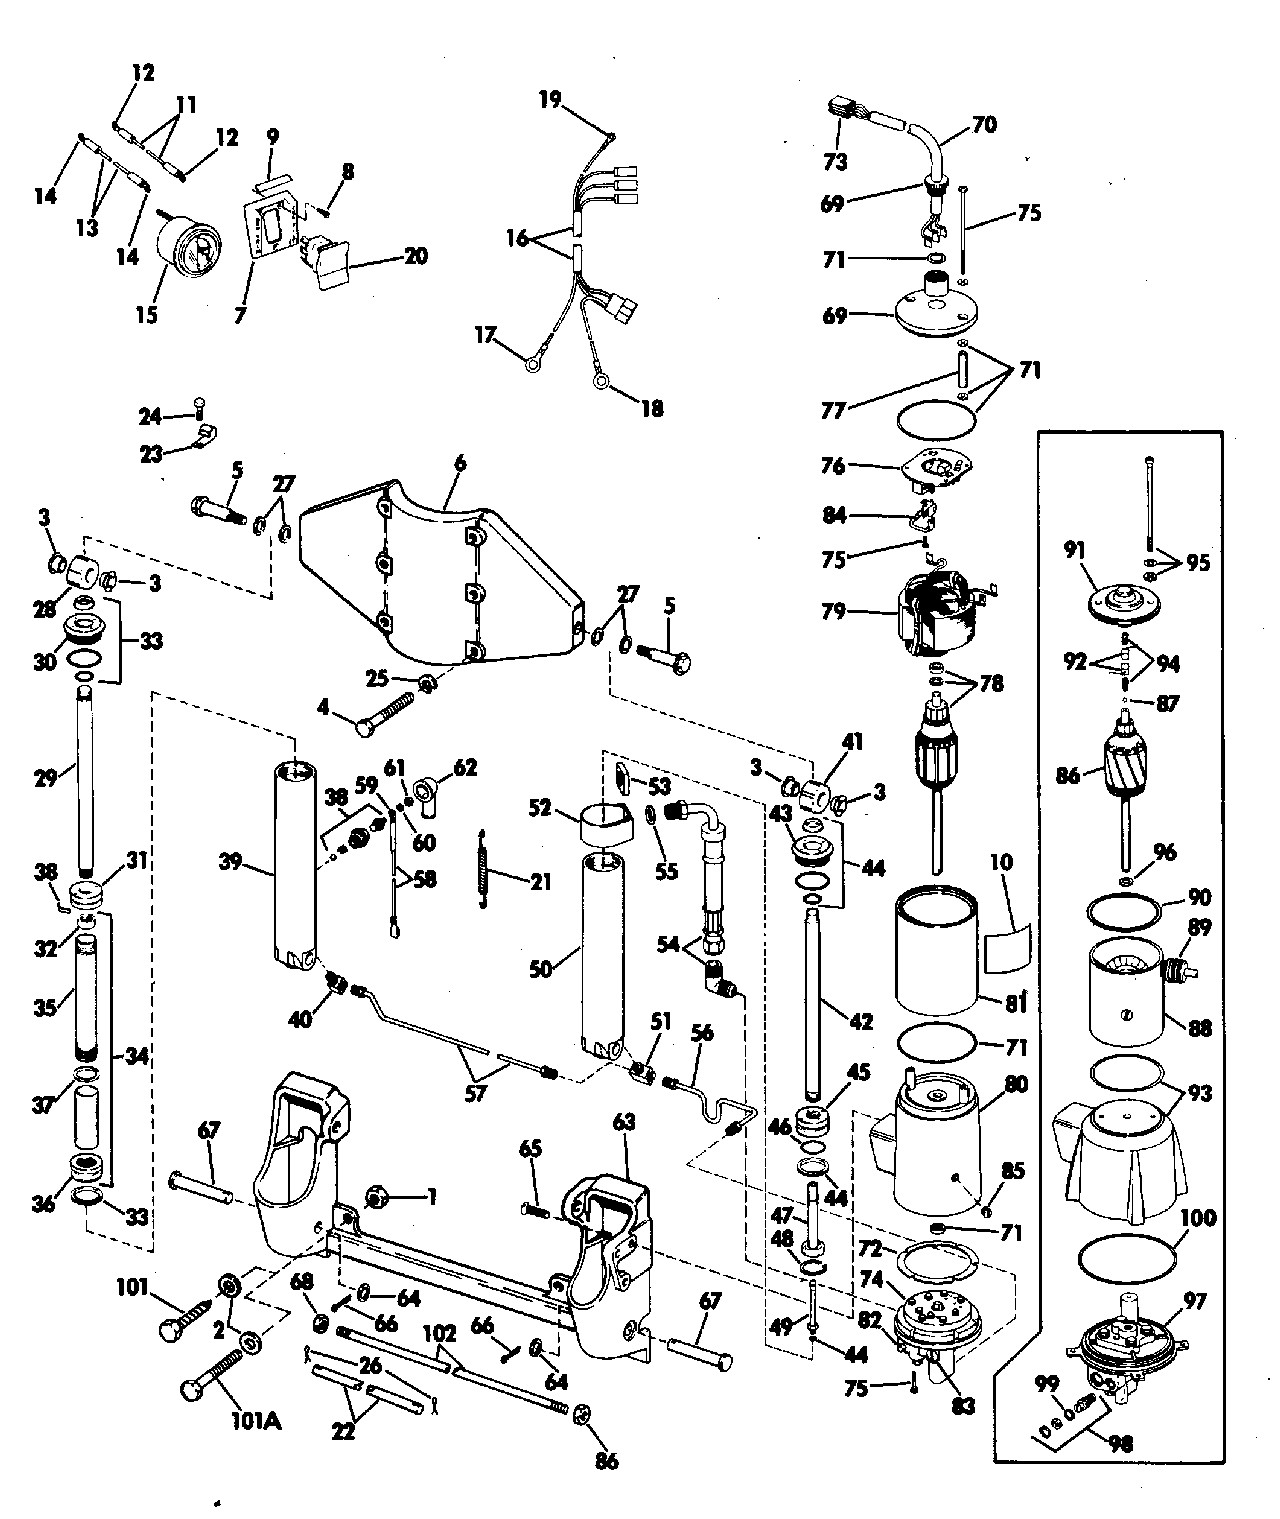 Evinrude Etec Parts Diagram | My Wiring DIagram